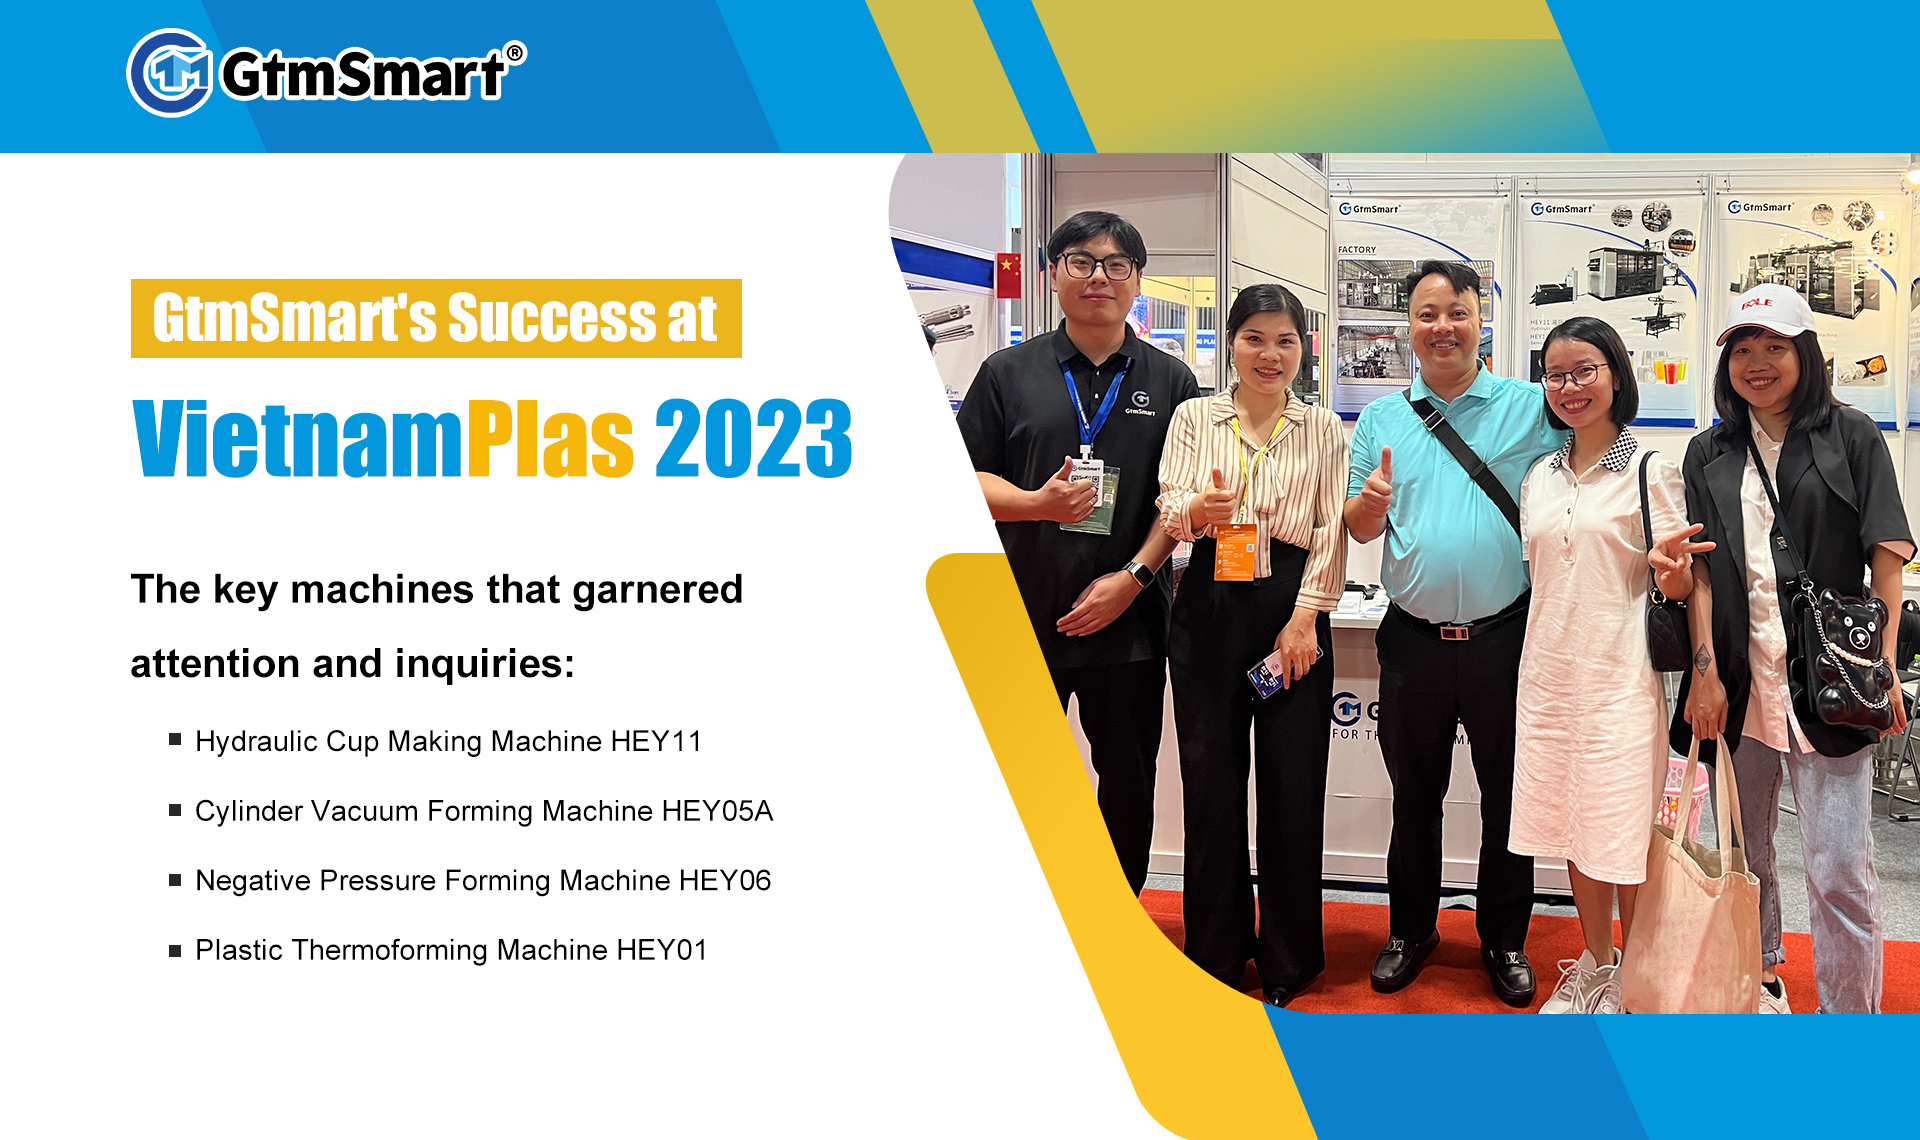 Il successo di GtmSmart al VietnamPlas 2023